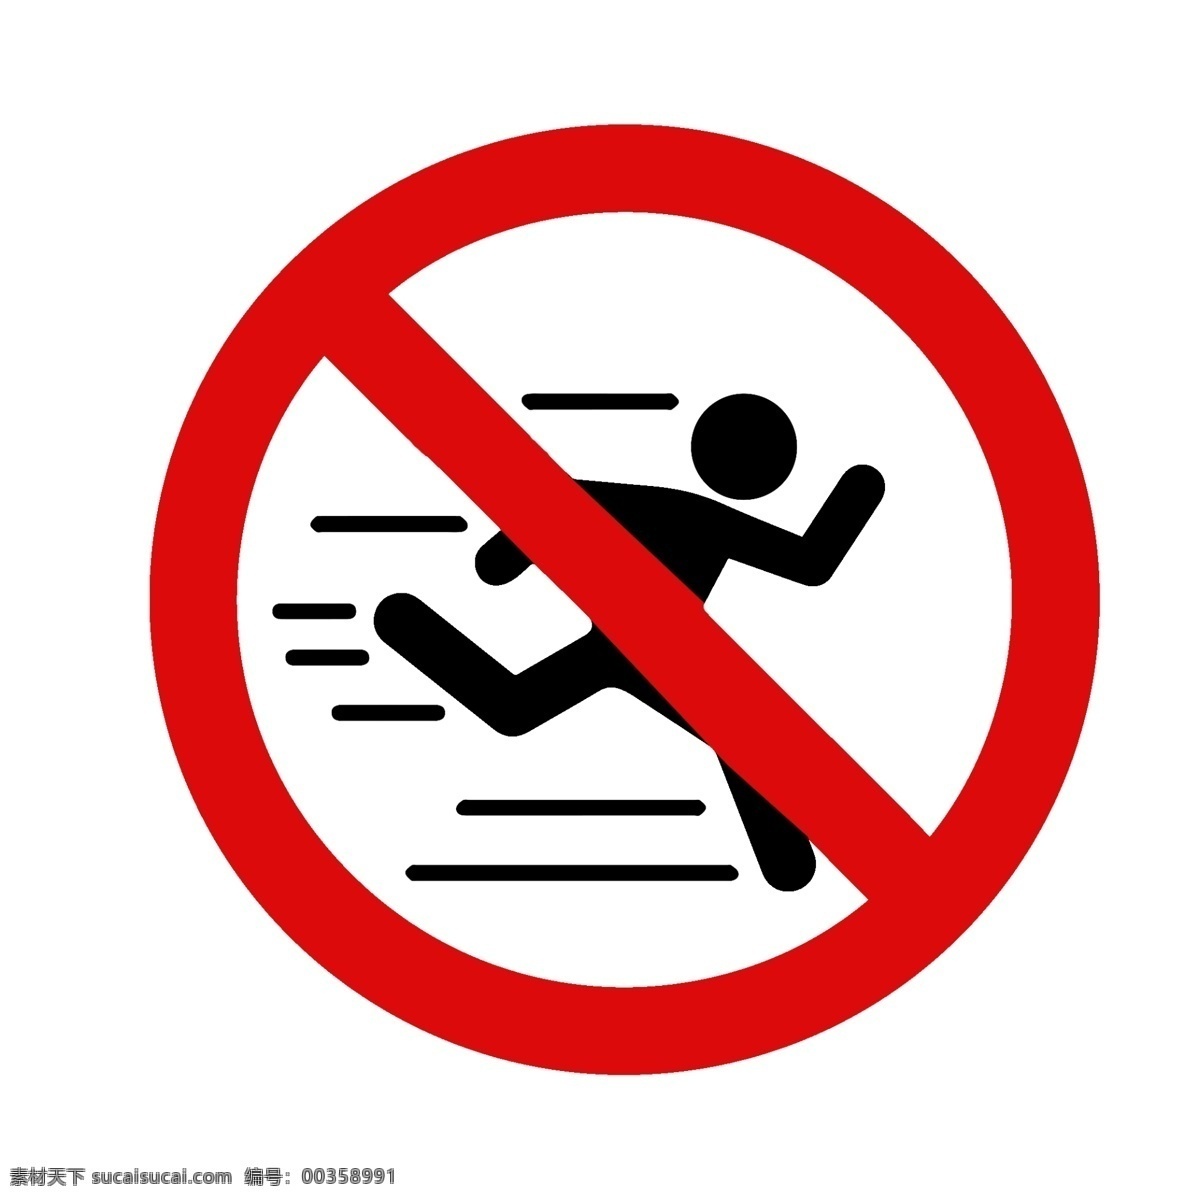 禁止 跑步 适量 标志 奔跑 人 比赛 小人物 马路 红绿灯